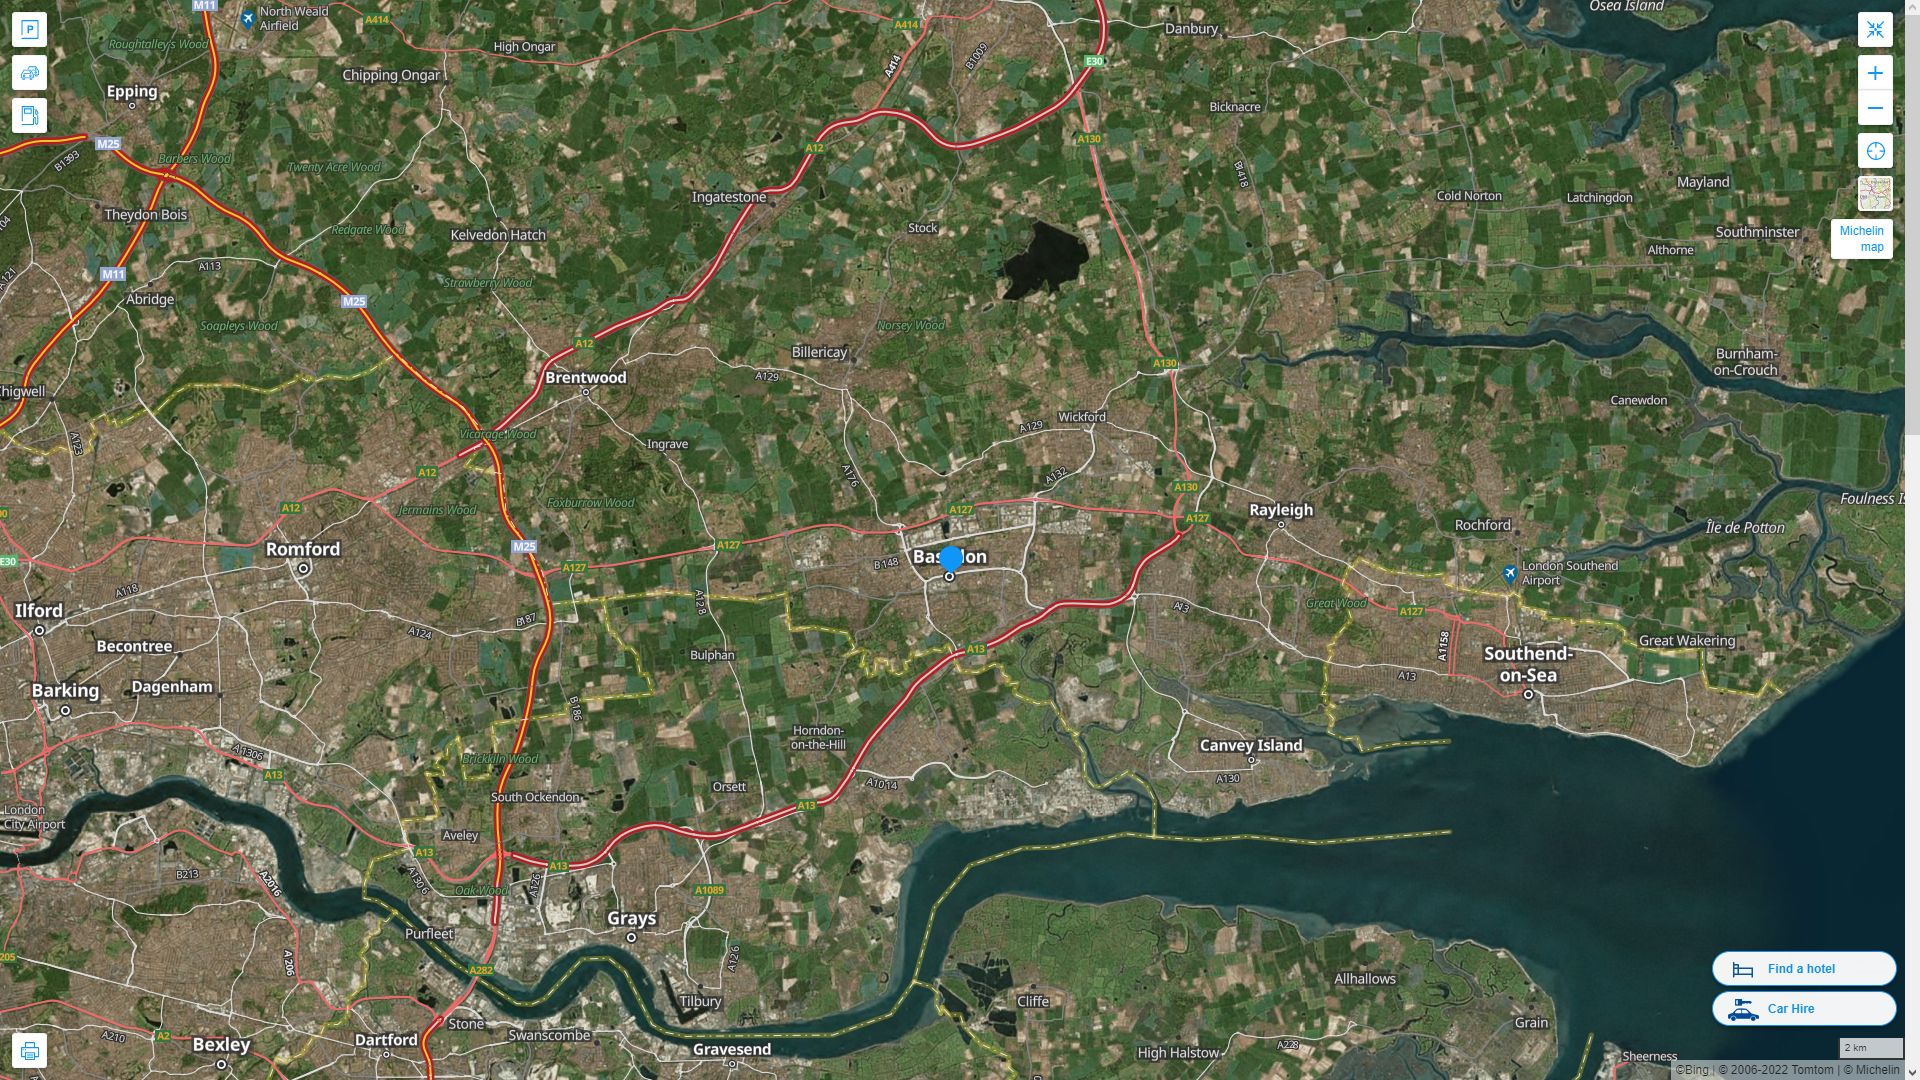 Basildon Royaume Uni Autoroute et carte routiere avec vue satellite